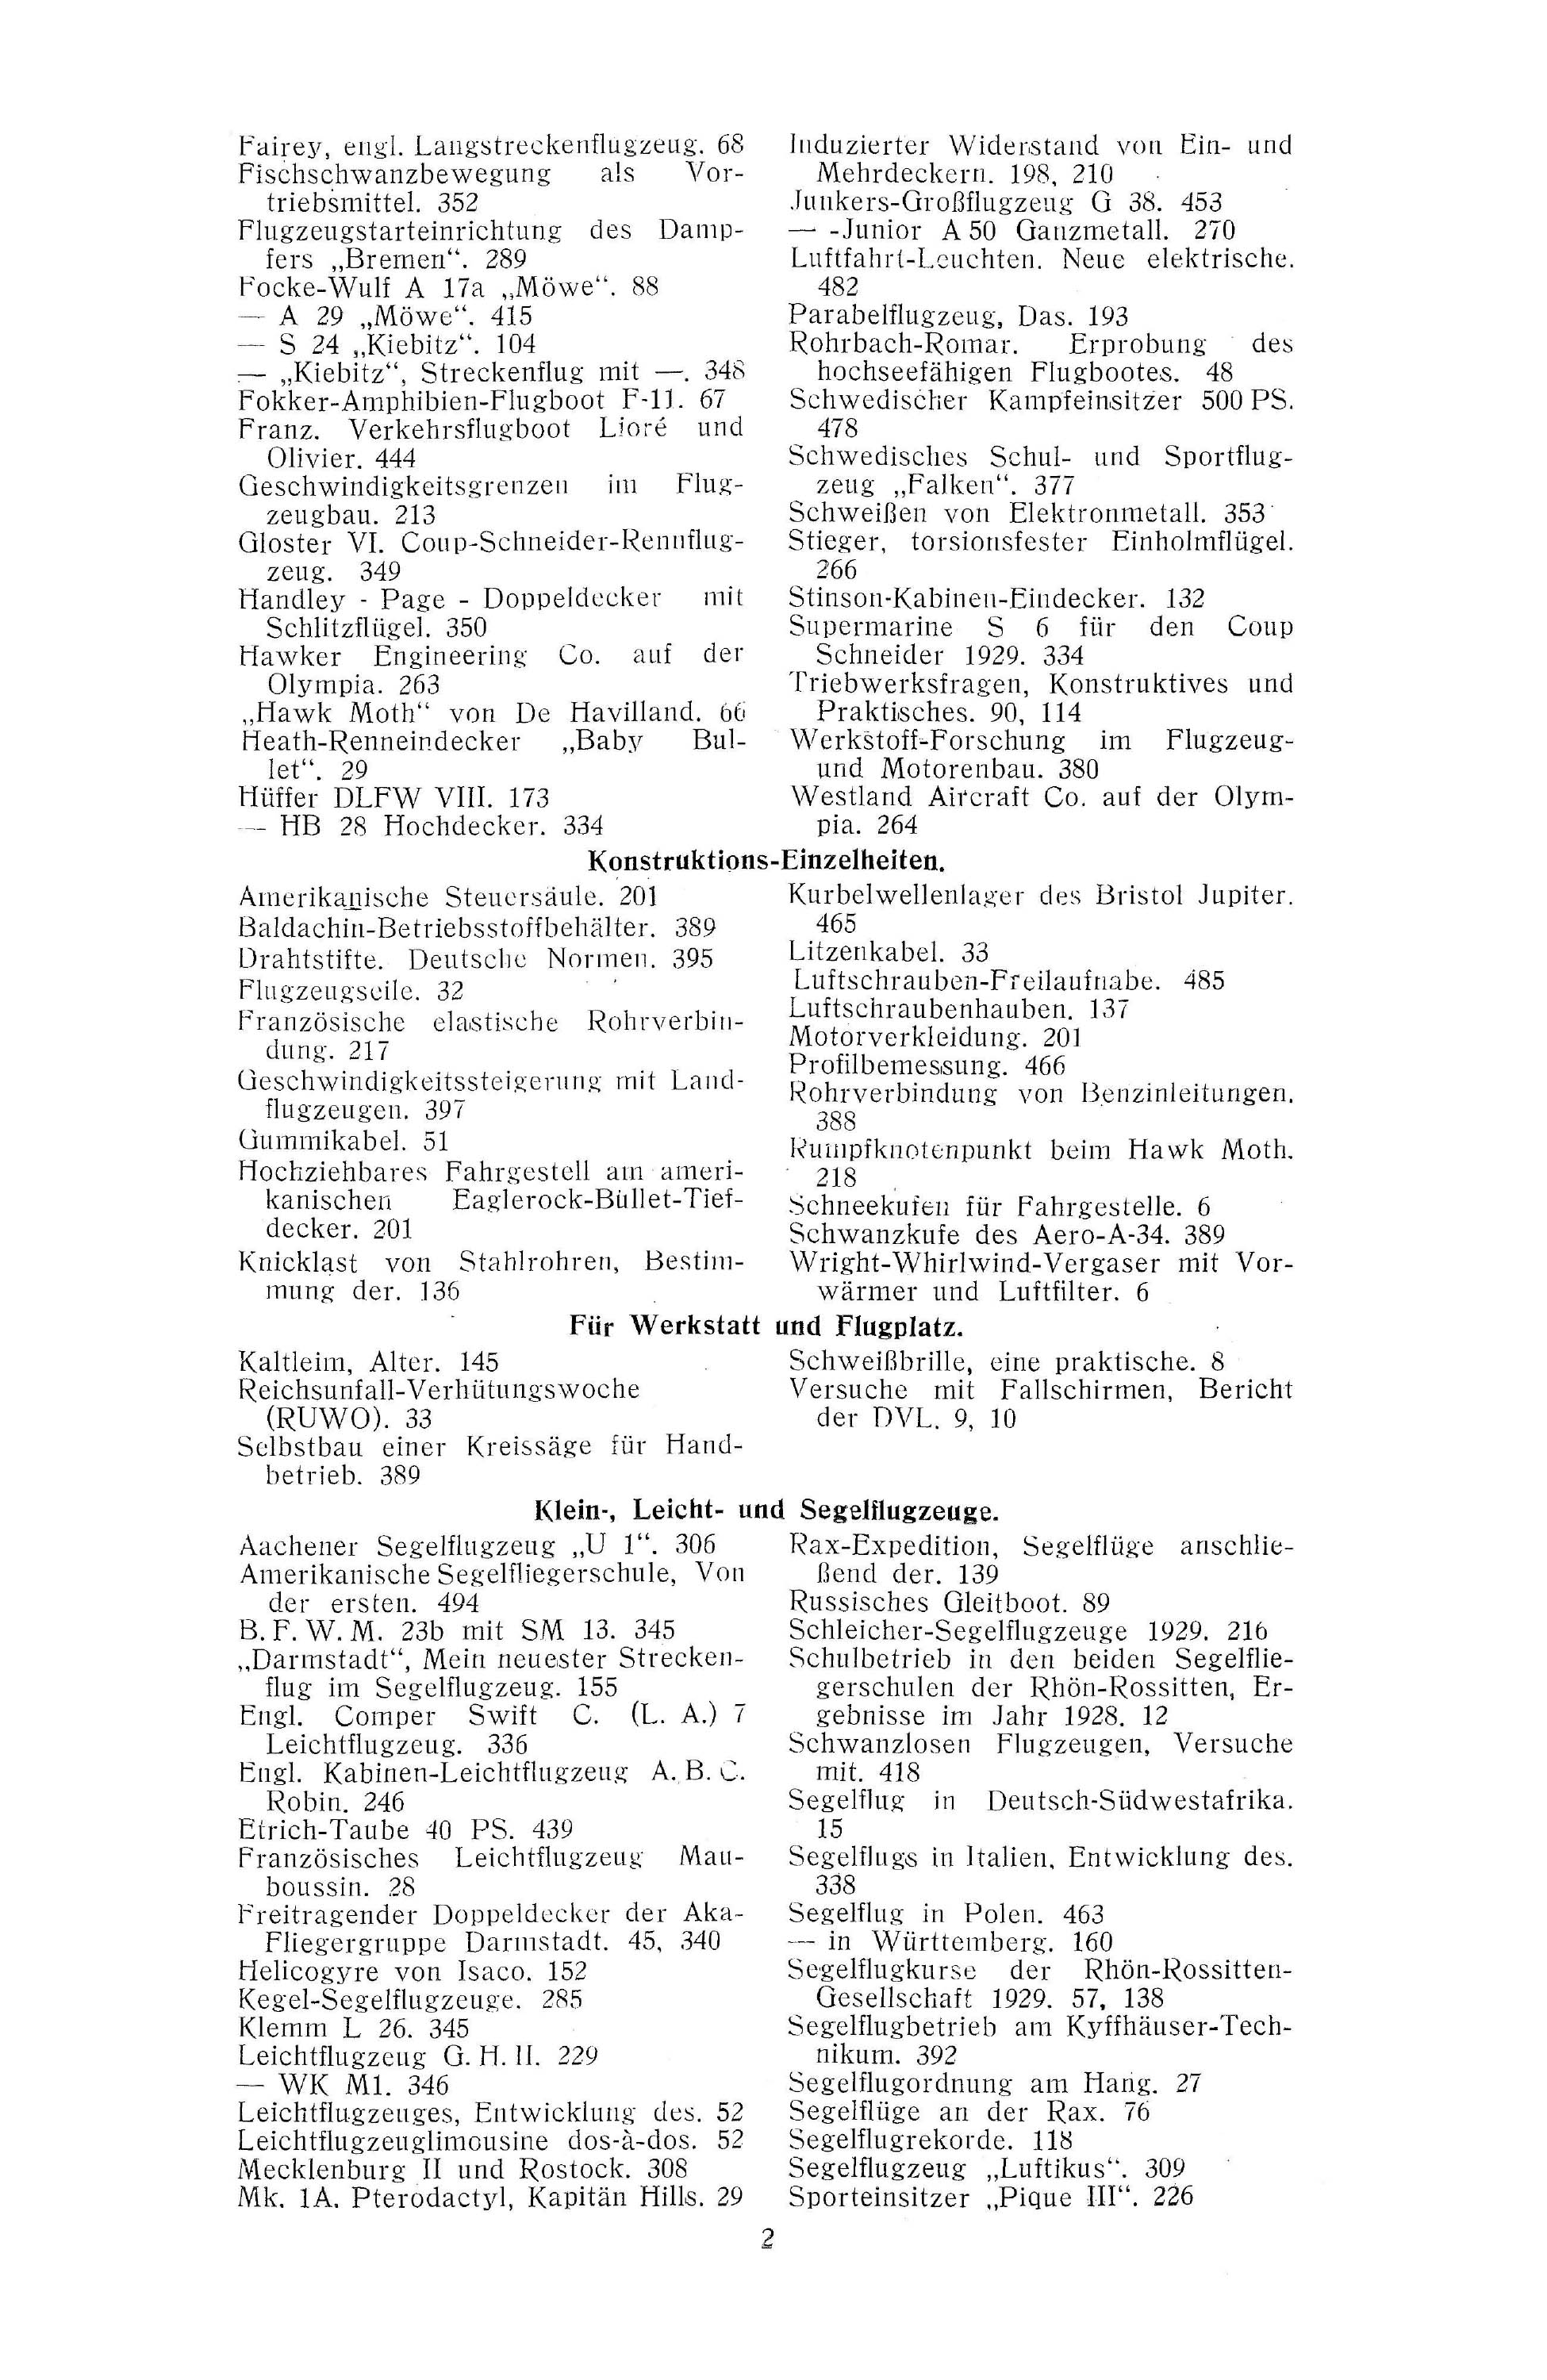 Sachregister und Inhaltsverzeichnis der Zeitschrift Flugsport 1929